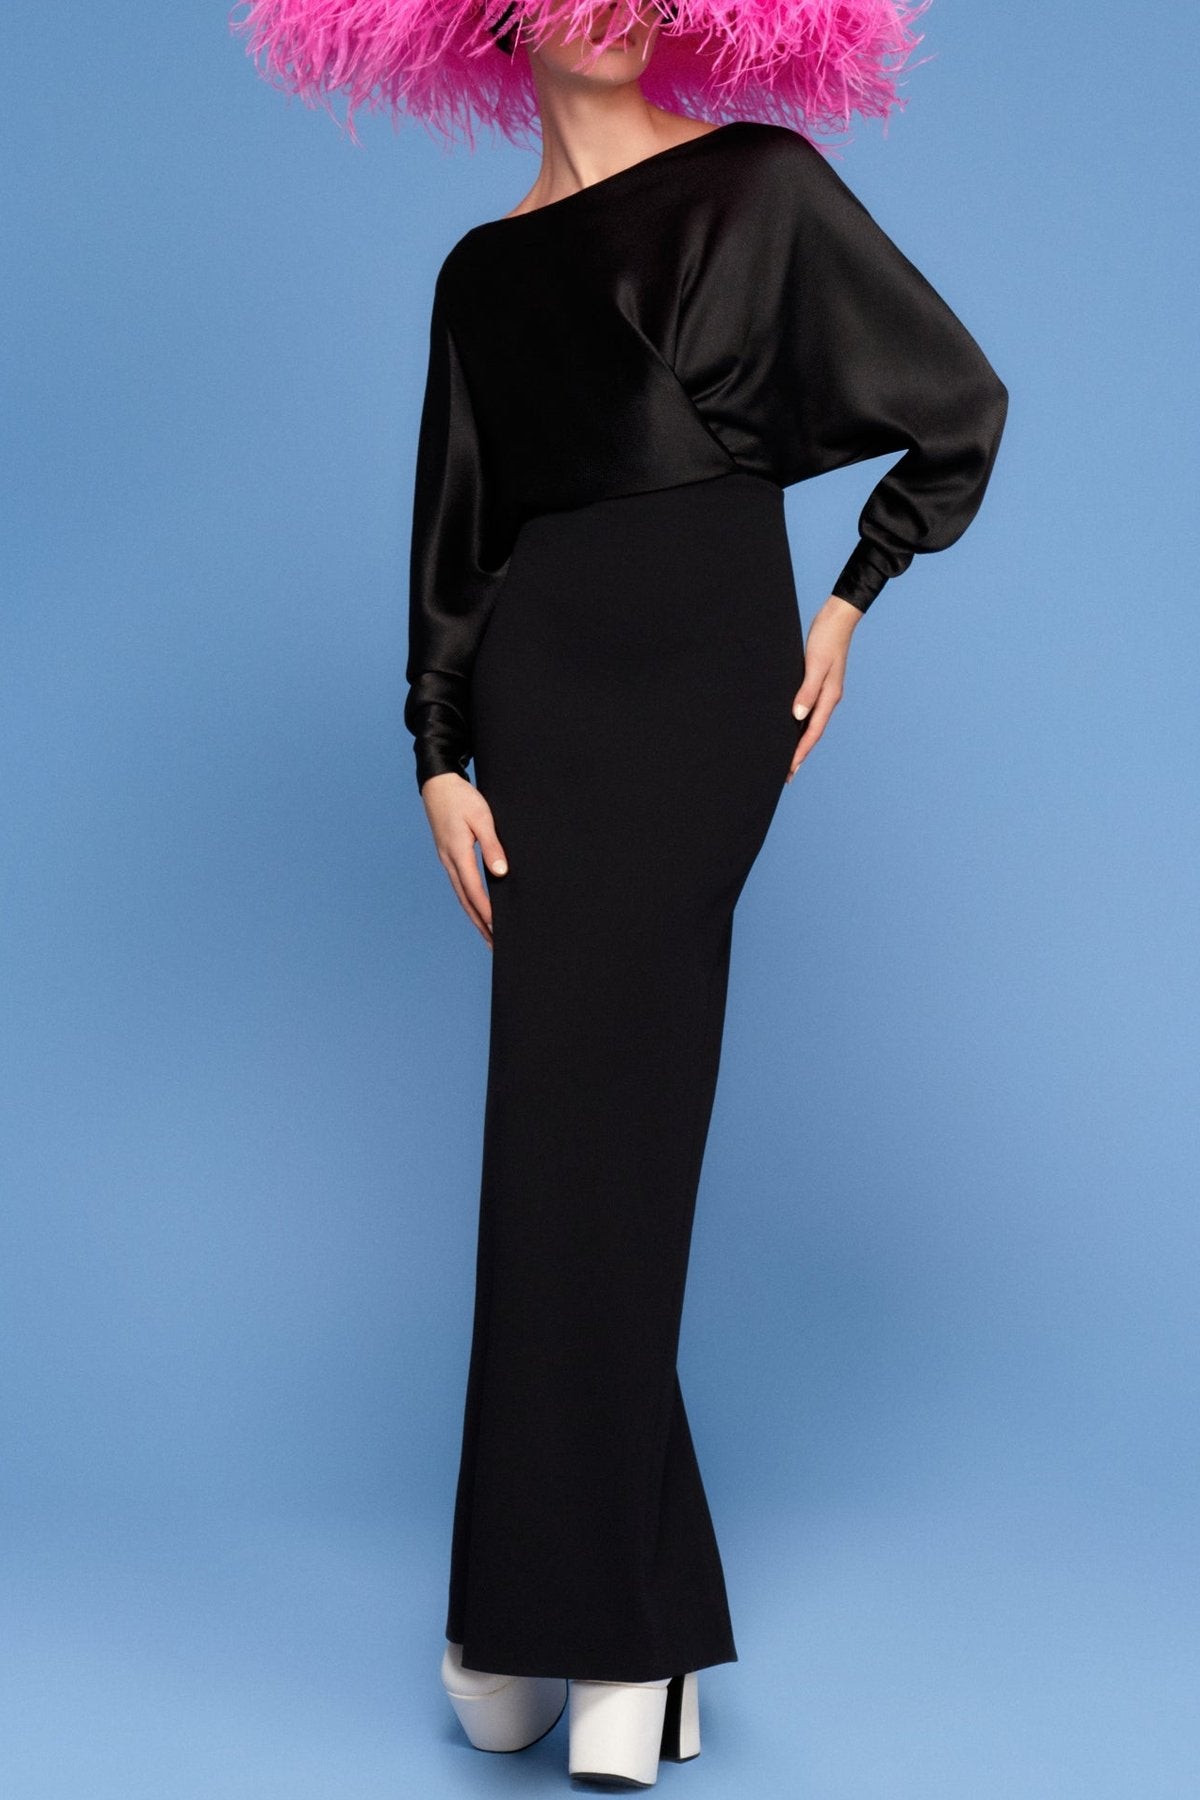 Aurora Maxi Dress in Black - shop-olivia.com